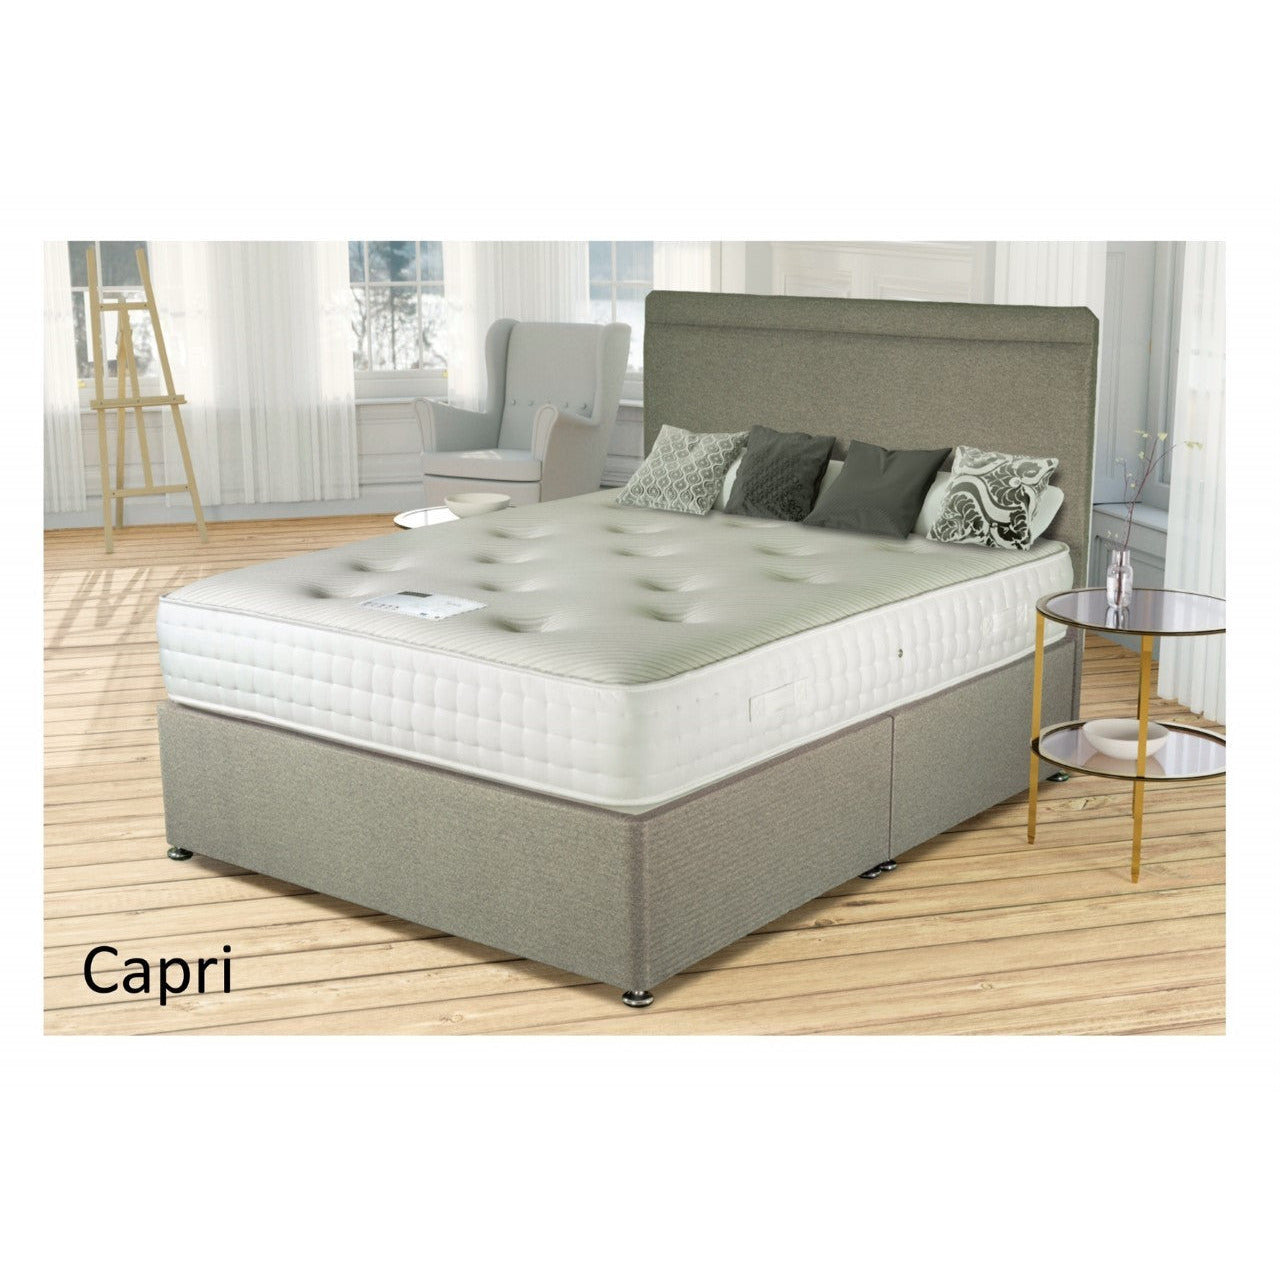 Capri Gel 1500 Pocket Sprung Bed